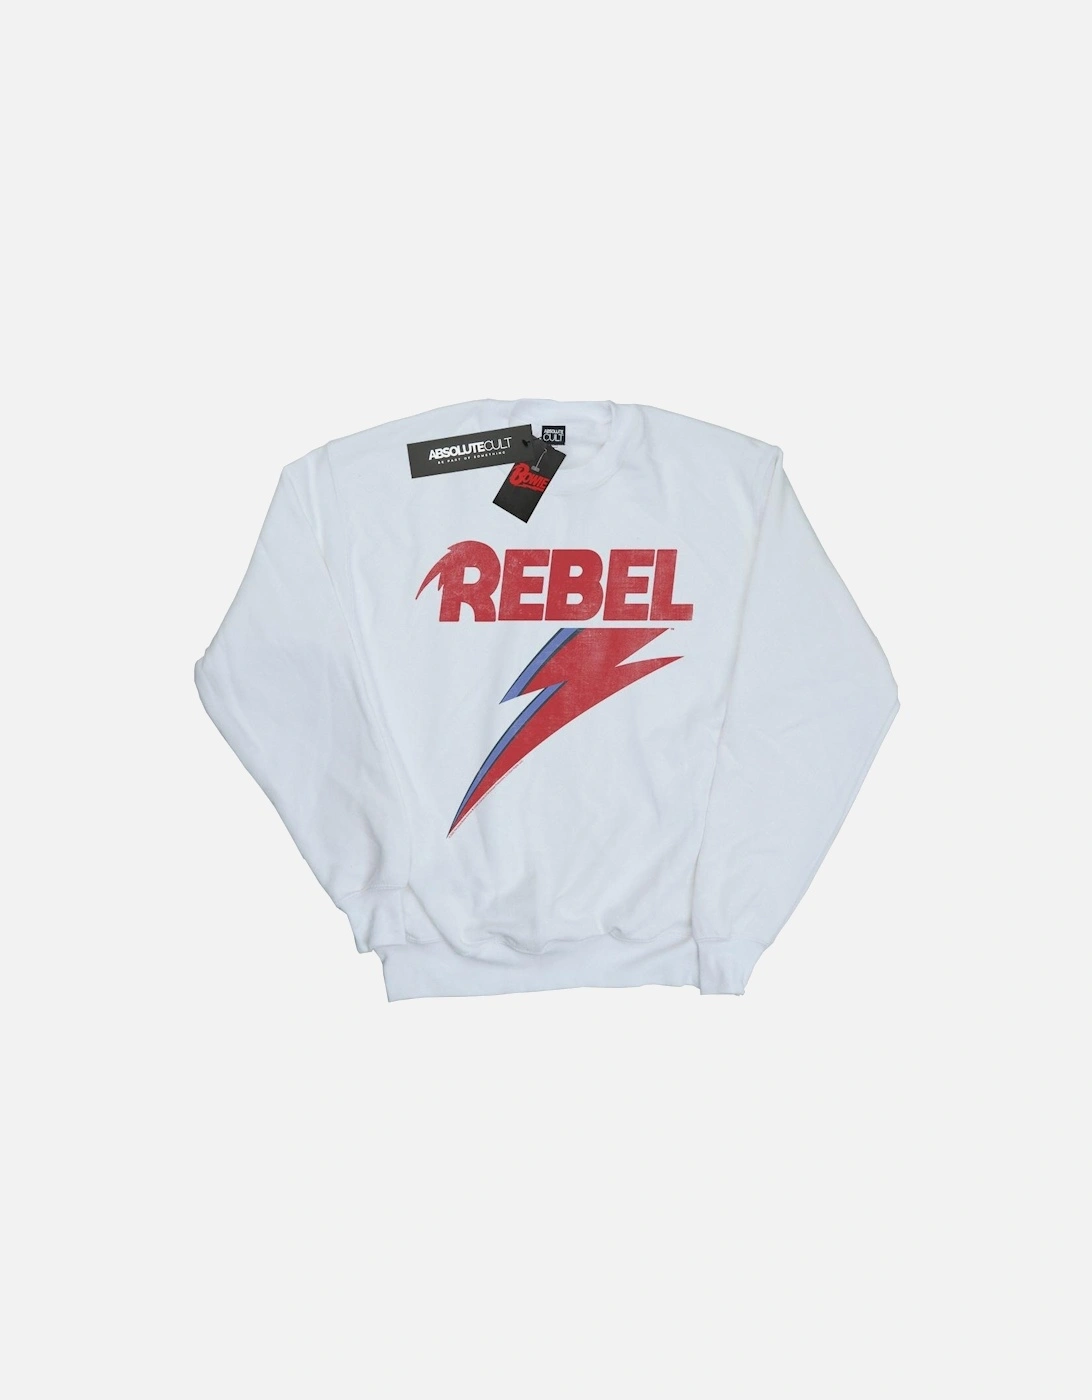 Boys Distressed Rebel Sweatshirt, 4 of 3